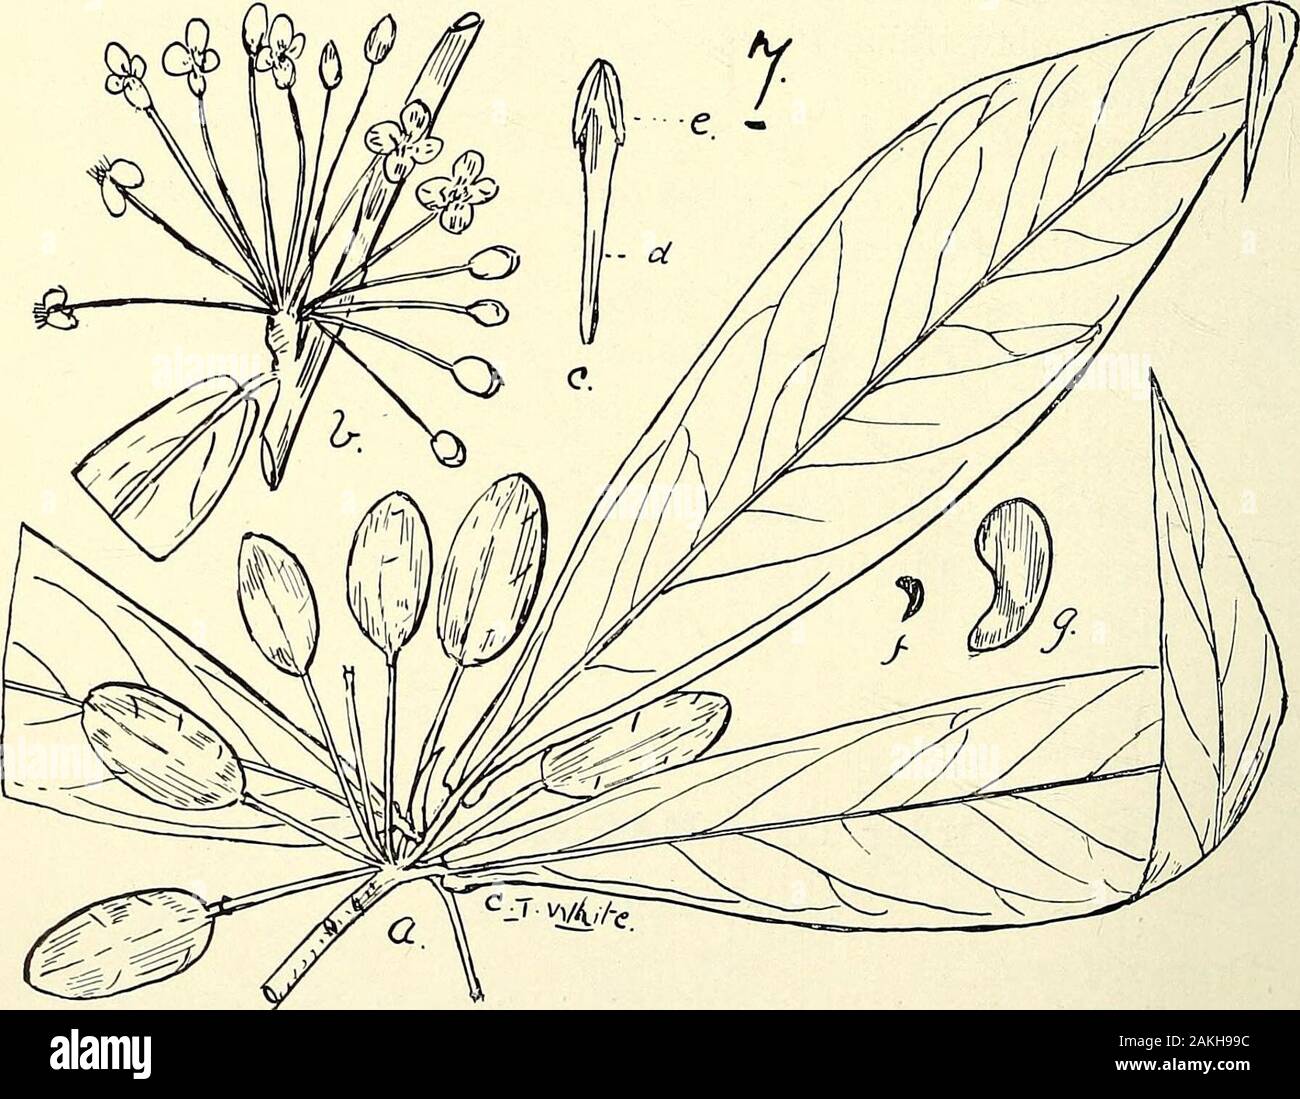 Umfassenden Katalog von Queensland Pflanzen, Einheimische und naturalizedTo, die hinzugefügt sind, soweit bekannt, die Aborigines und anderen volkstümlichen Namen; mit zahlreichen Abbildungen und reichlich Notizen auf die Eigenschaften, Funktionen, &c., der Pflanzen. 5. HlBBERTIA LEPIDOTA, R. Br. 6. Adrastvea Harke, DC. 7. Drimys dipetala, F. v. M. Fvuiting branchlet (a), (b), (c) Staubblatt, (d), (e) Staubbeutel, (f), (g) Samen Samen, (a), (b) und (f) Nat. Größe; (c), (d), (e) und (g) Enl. Iii. MAGNOLIACEiE. 23. Stockfoto